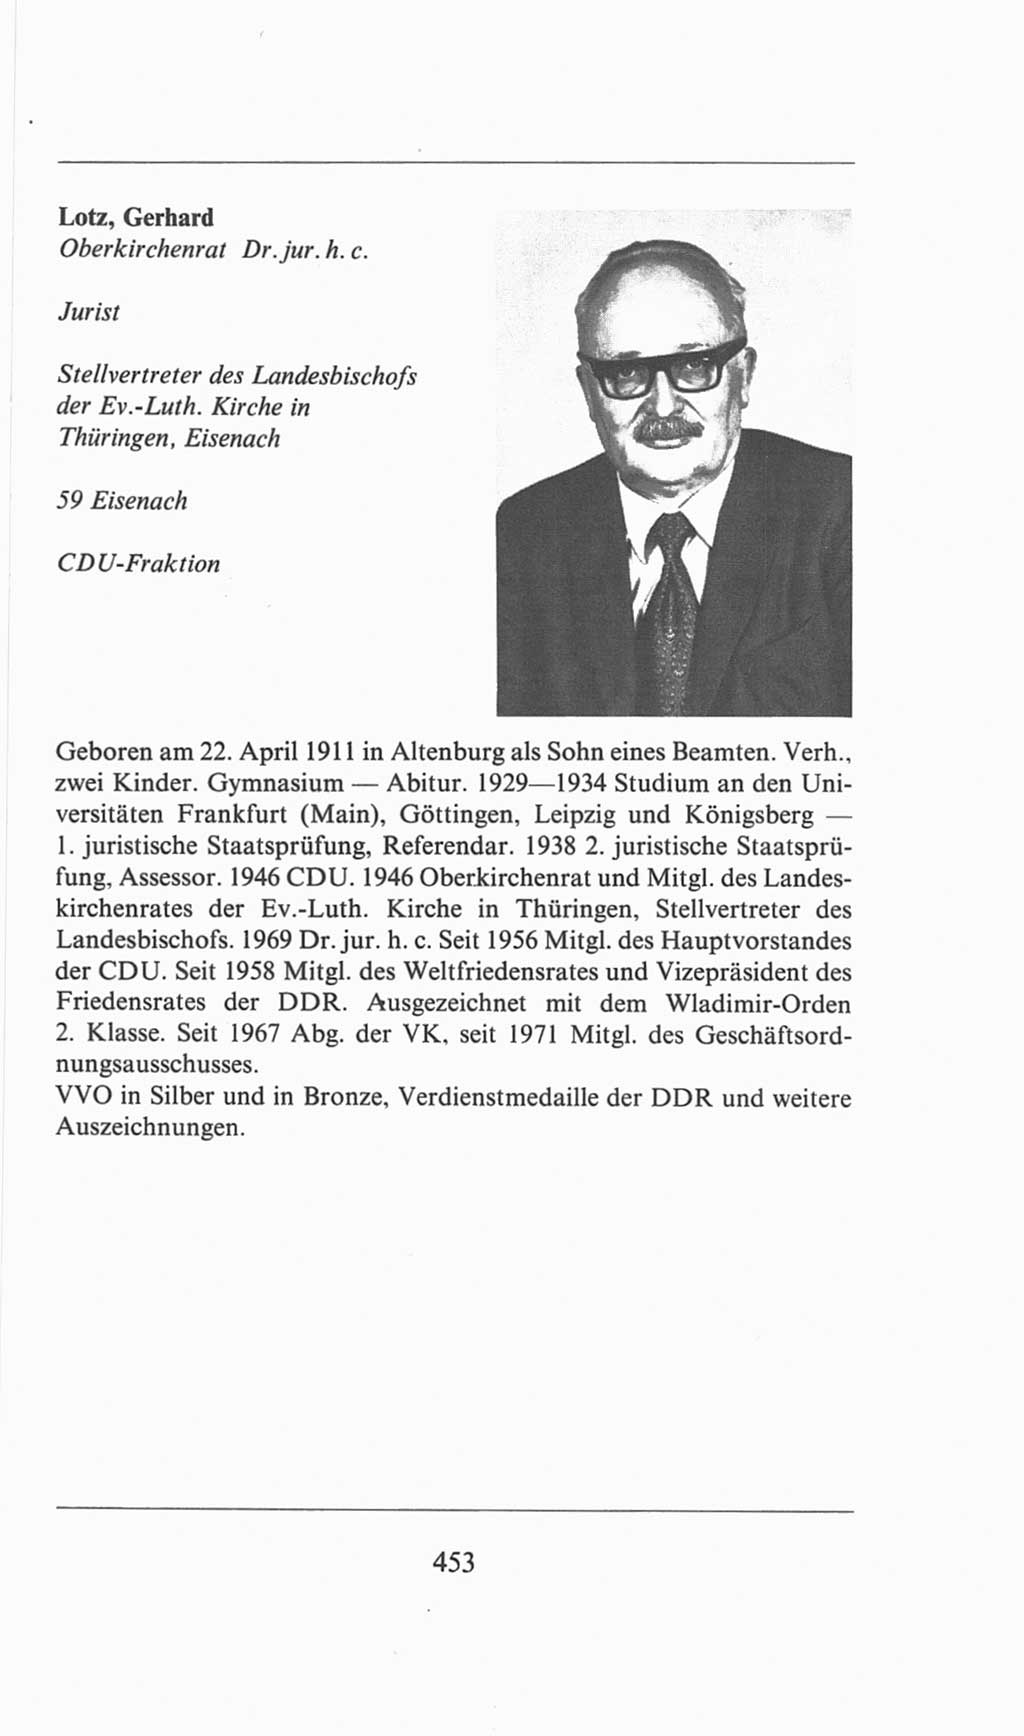 Volkskammer (VK) der Deutschen Demokratischen Republik (DDR), 6. Wahlperiode 1971-1976, Seite 453 (VK. DDR 6. WP. 1971-1976, S. 453)